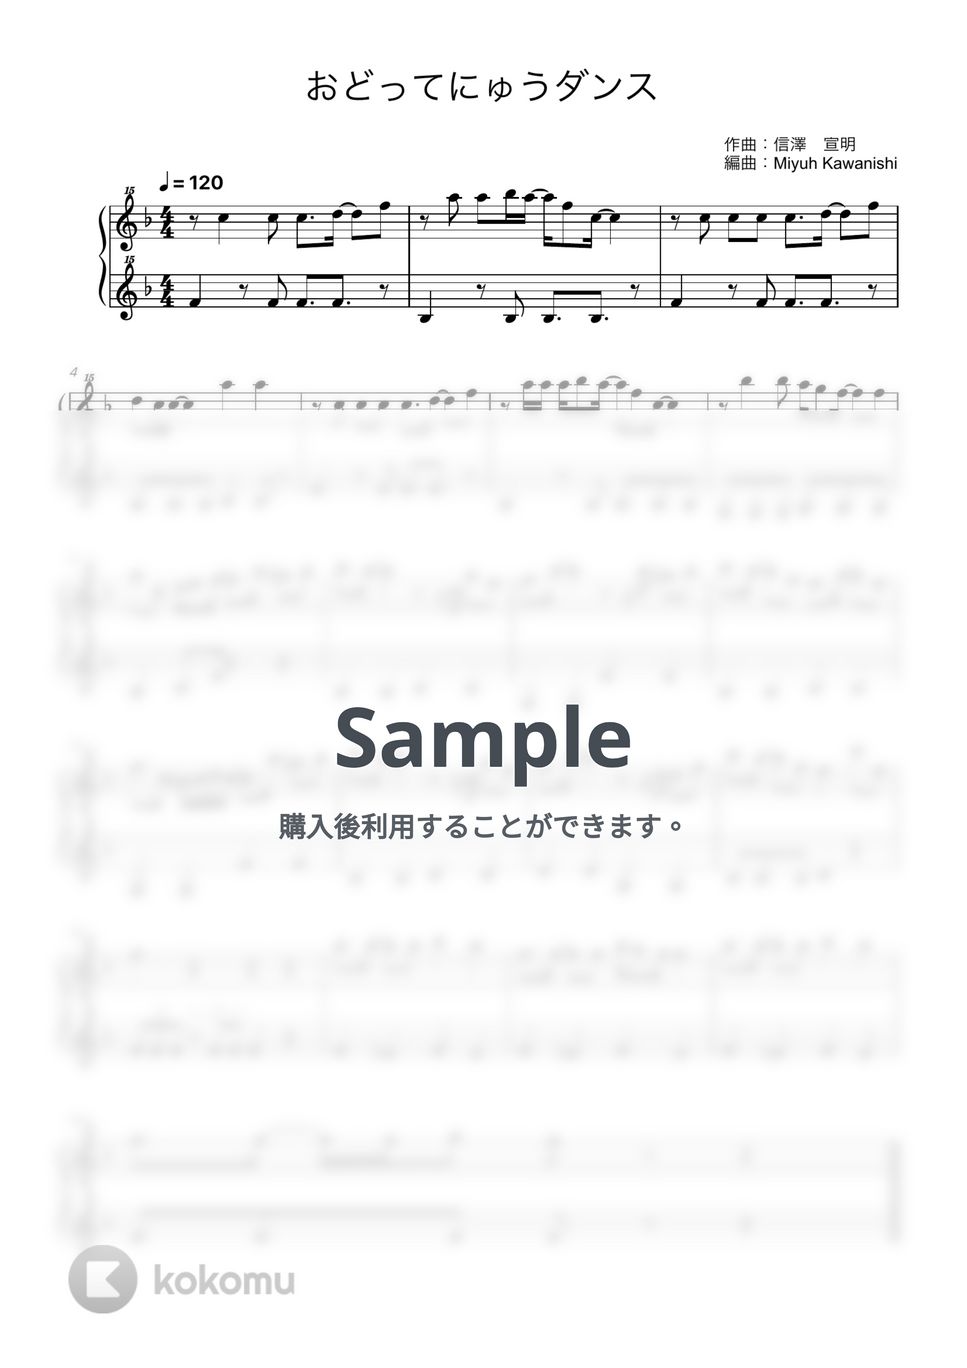 おどってにゅうダンス (トイピアノ / 25鍵盤 / シナぷしゅ) by 川西 三裕